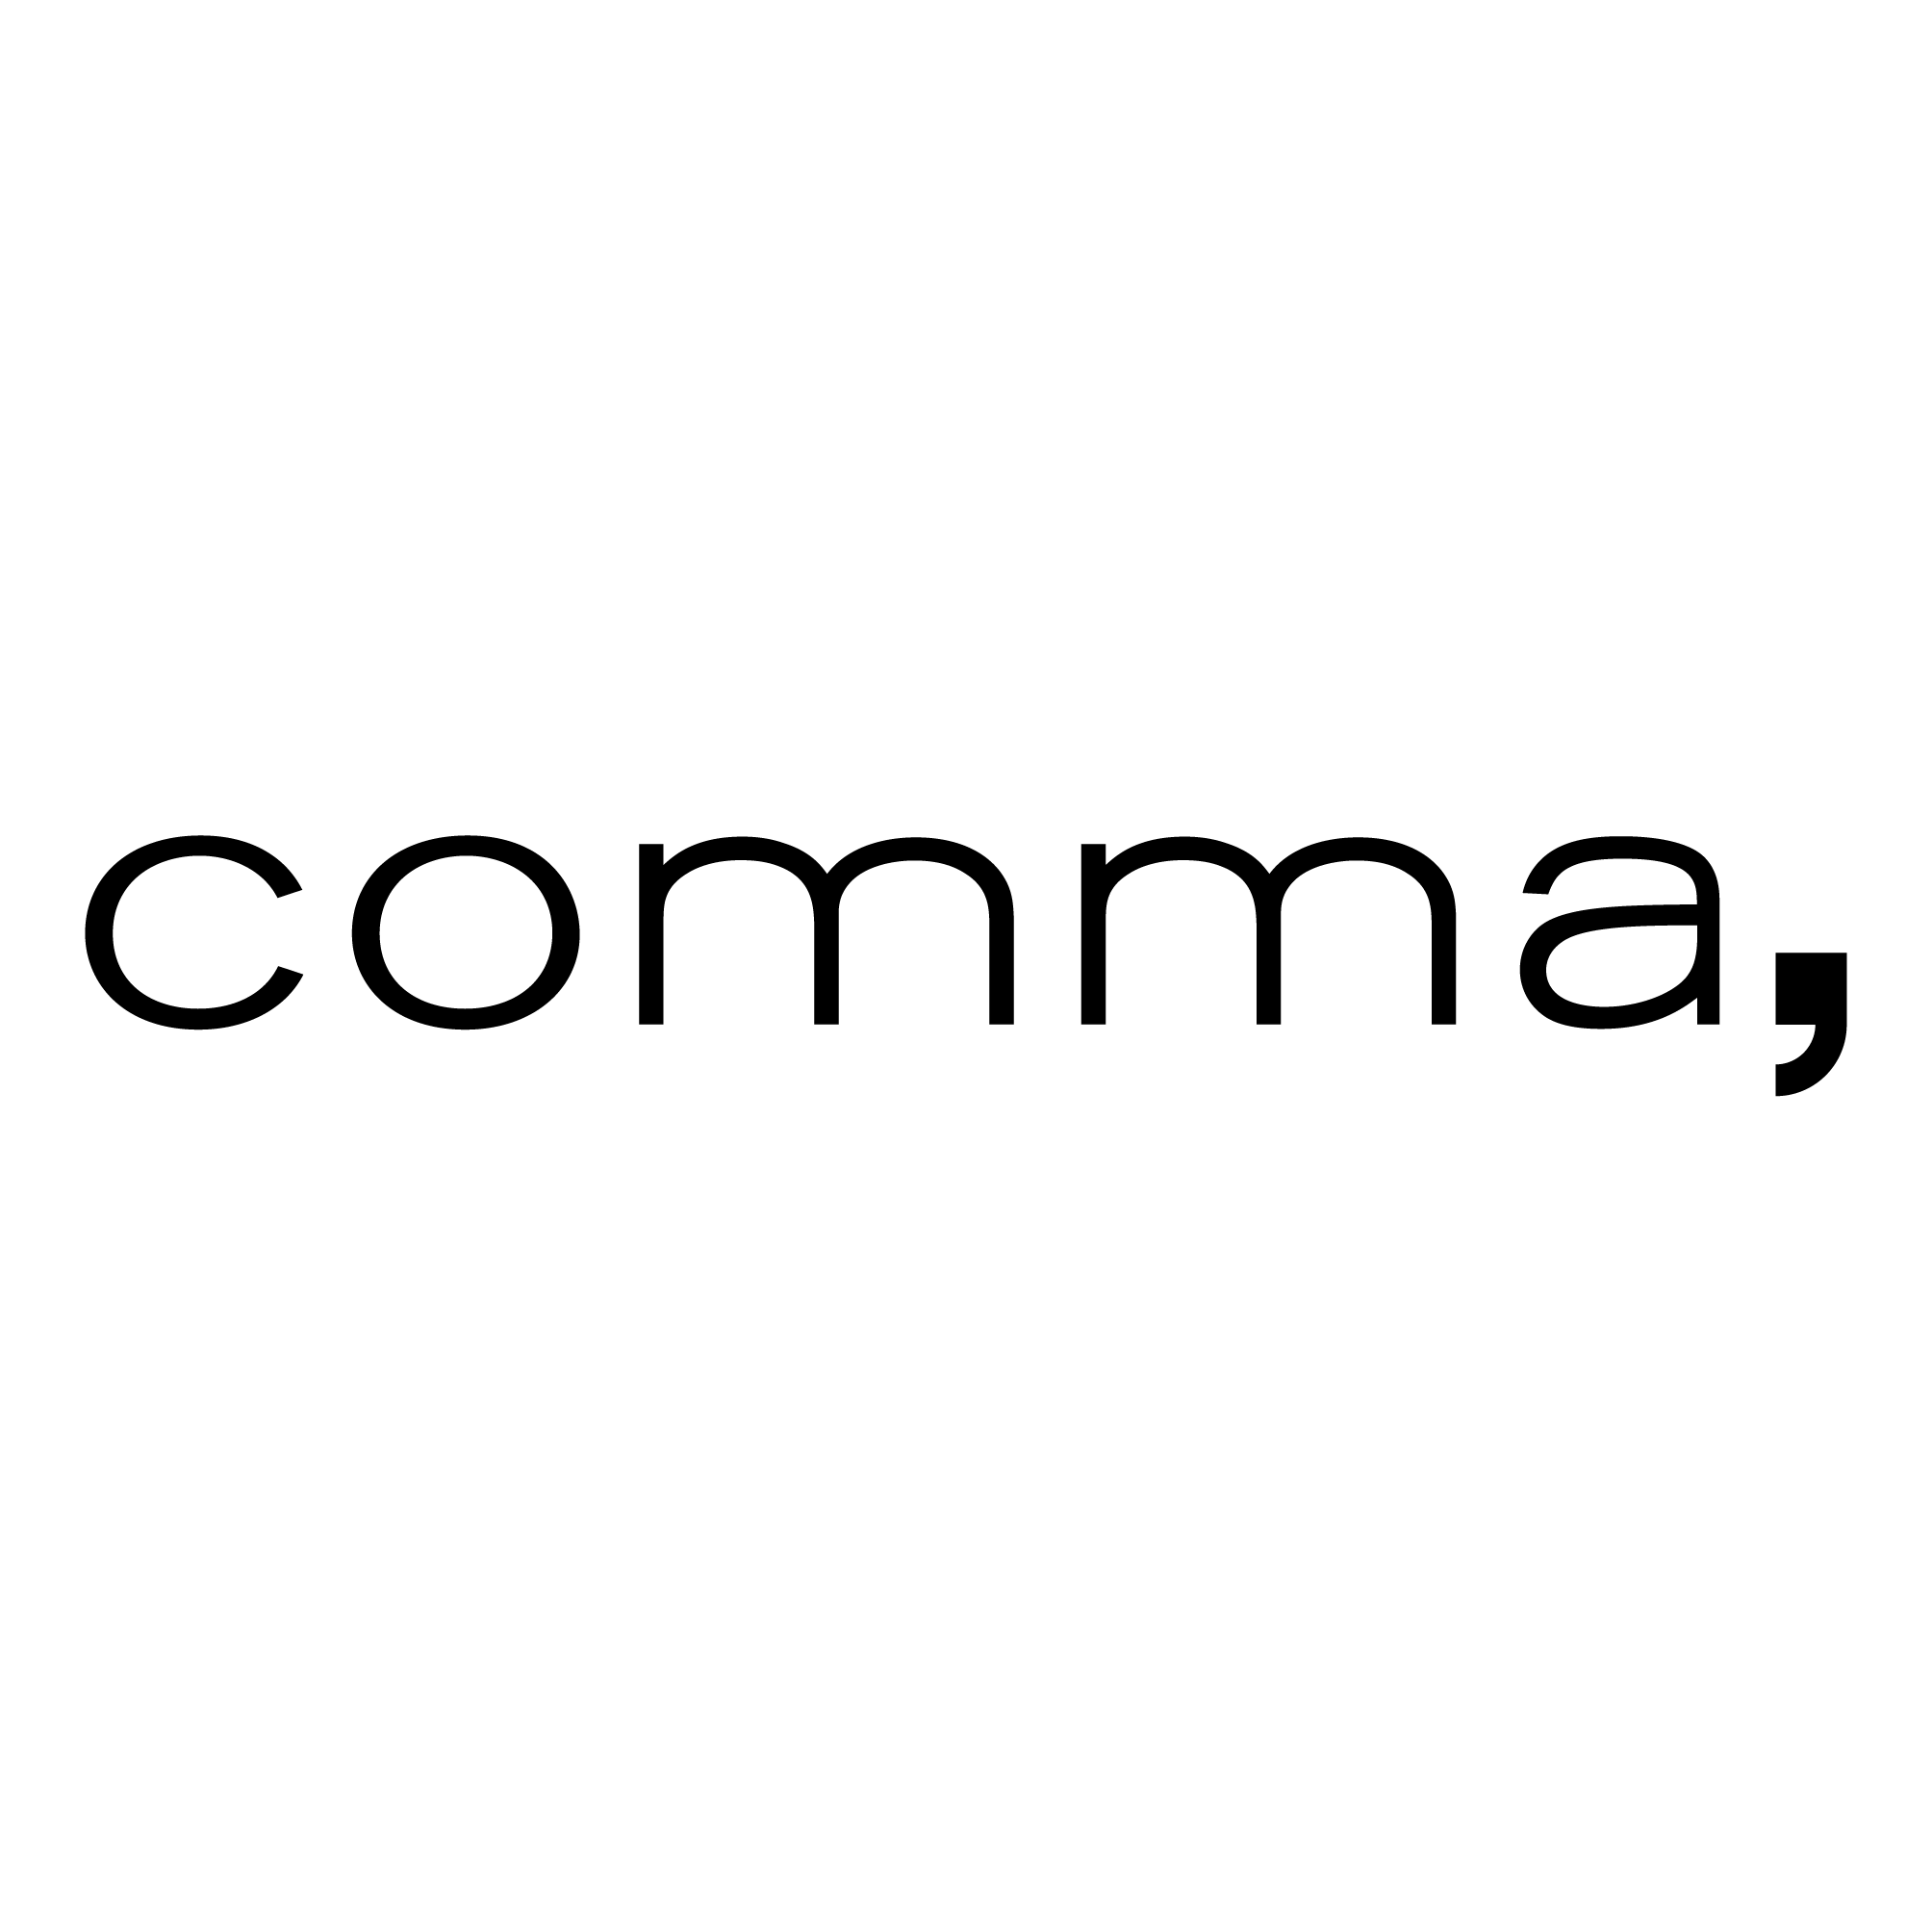 Logo comma - GESCHLOSSEN